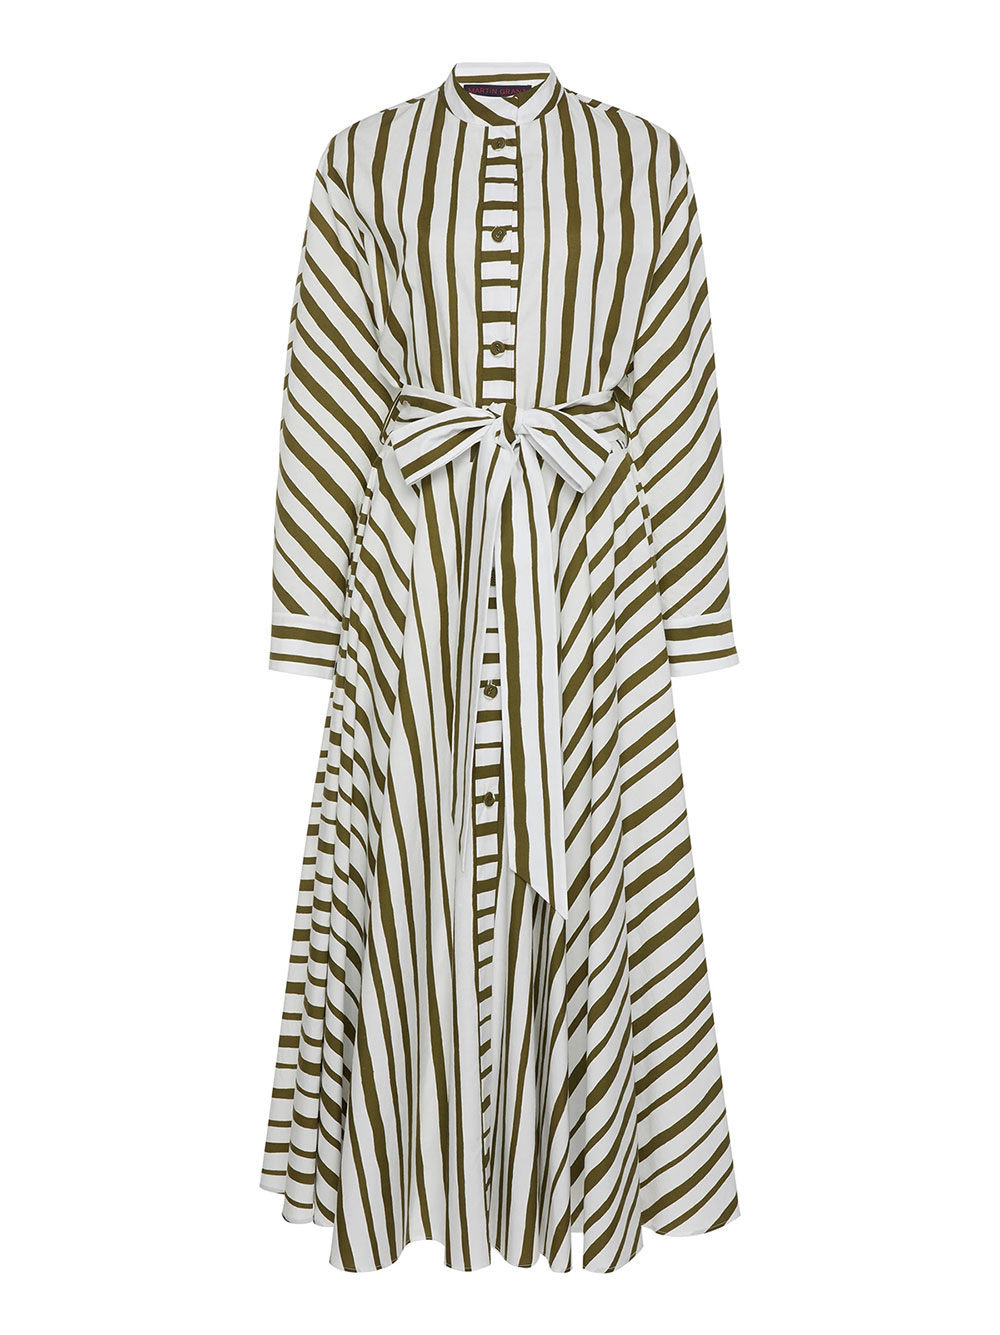 Martin Grant striped cotton dress, USD $1,385 (approx. NZD $2,100) available for pre-order on Moda Operandi